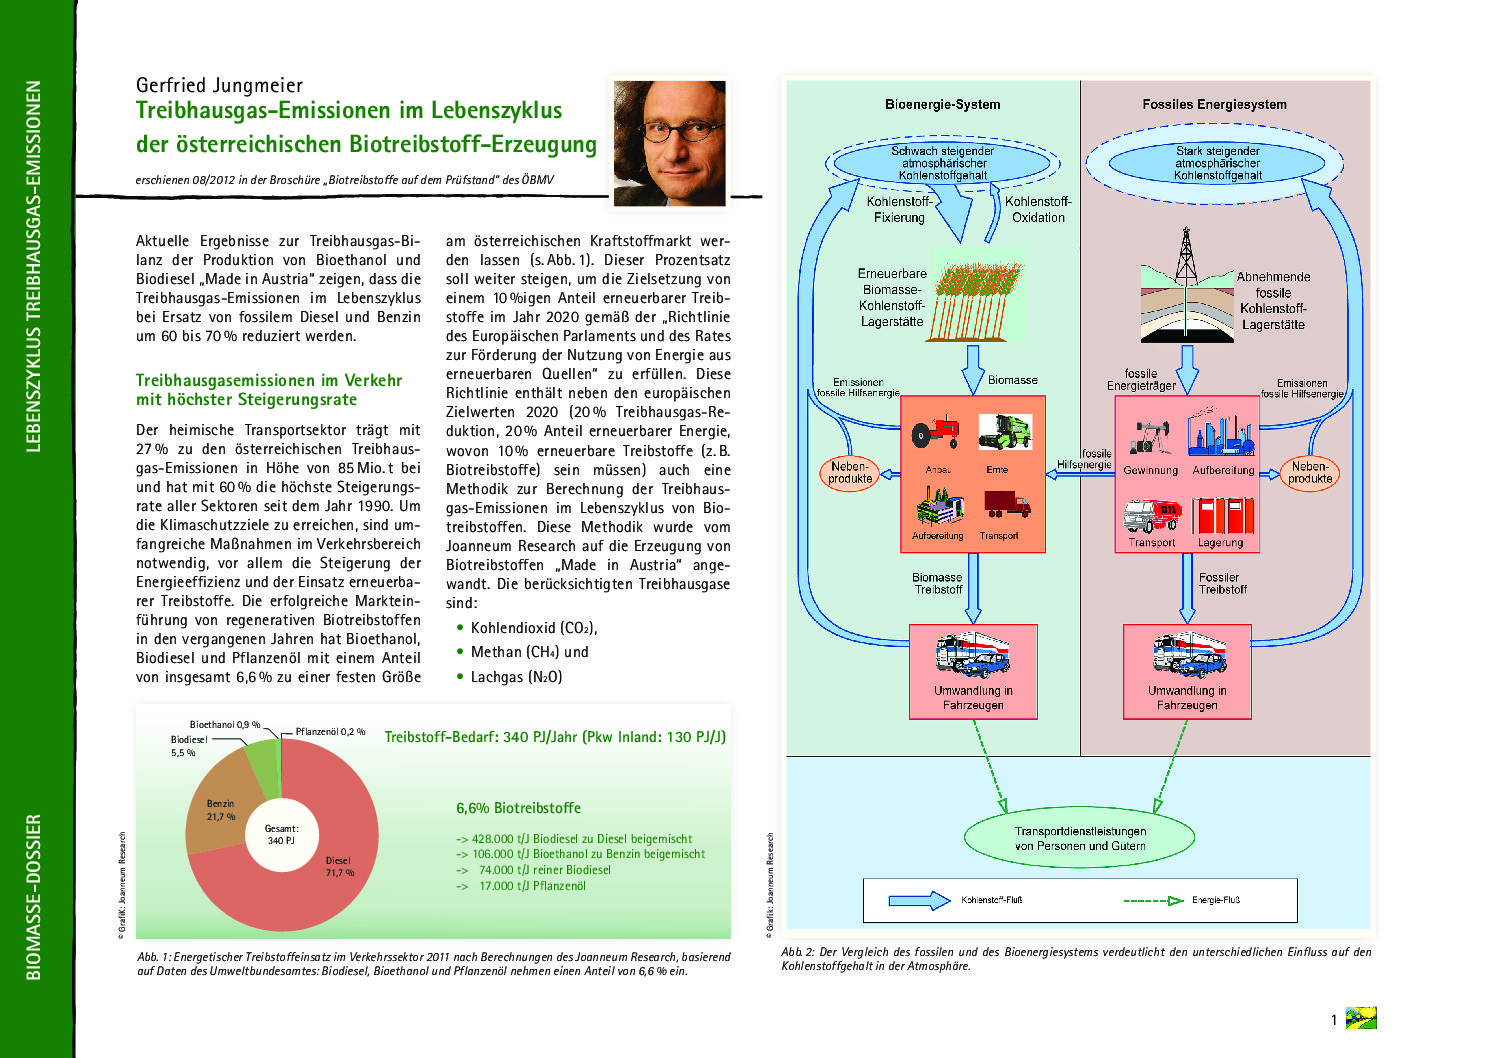 Treibhausgas-Emissionen im Lebenszyklus der österreichischen Biotreibstoff-Erzeugung